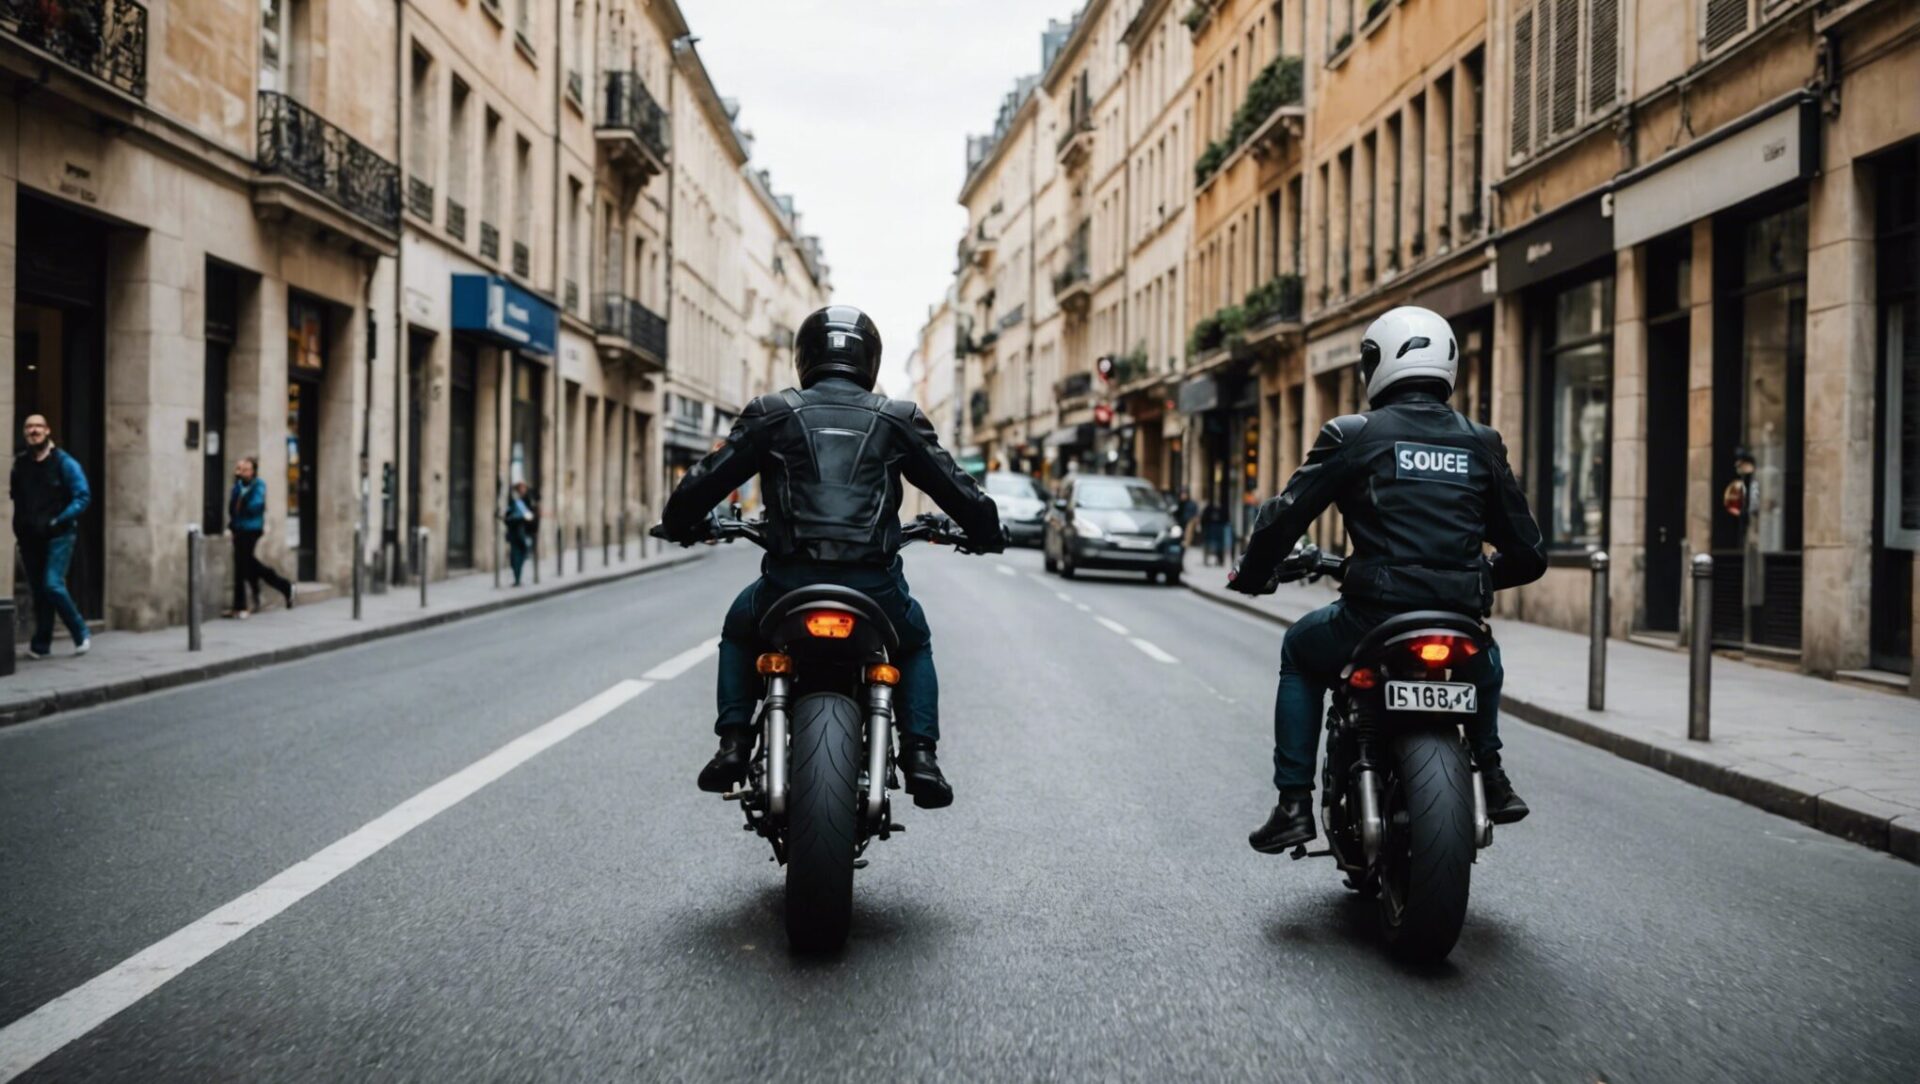 découvrez nos conseils pratiques pour apprendre à conduire une moto en toute sécurité et éviter les dangers de la route. apprenez les bonnes pratiques pour une conduite responsable et protégez-vous lors de vos déplacements en moto.